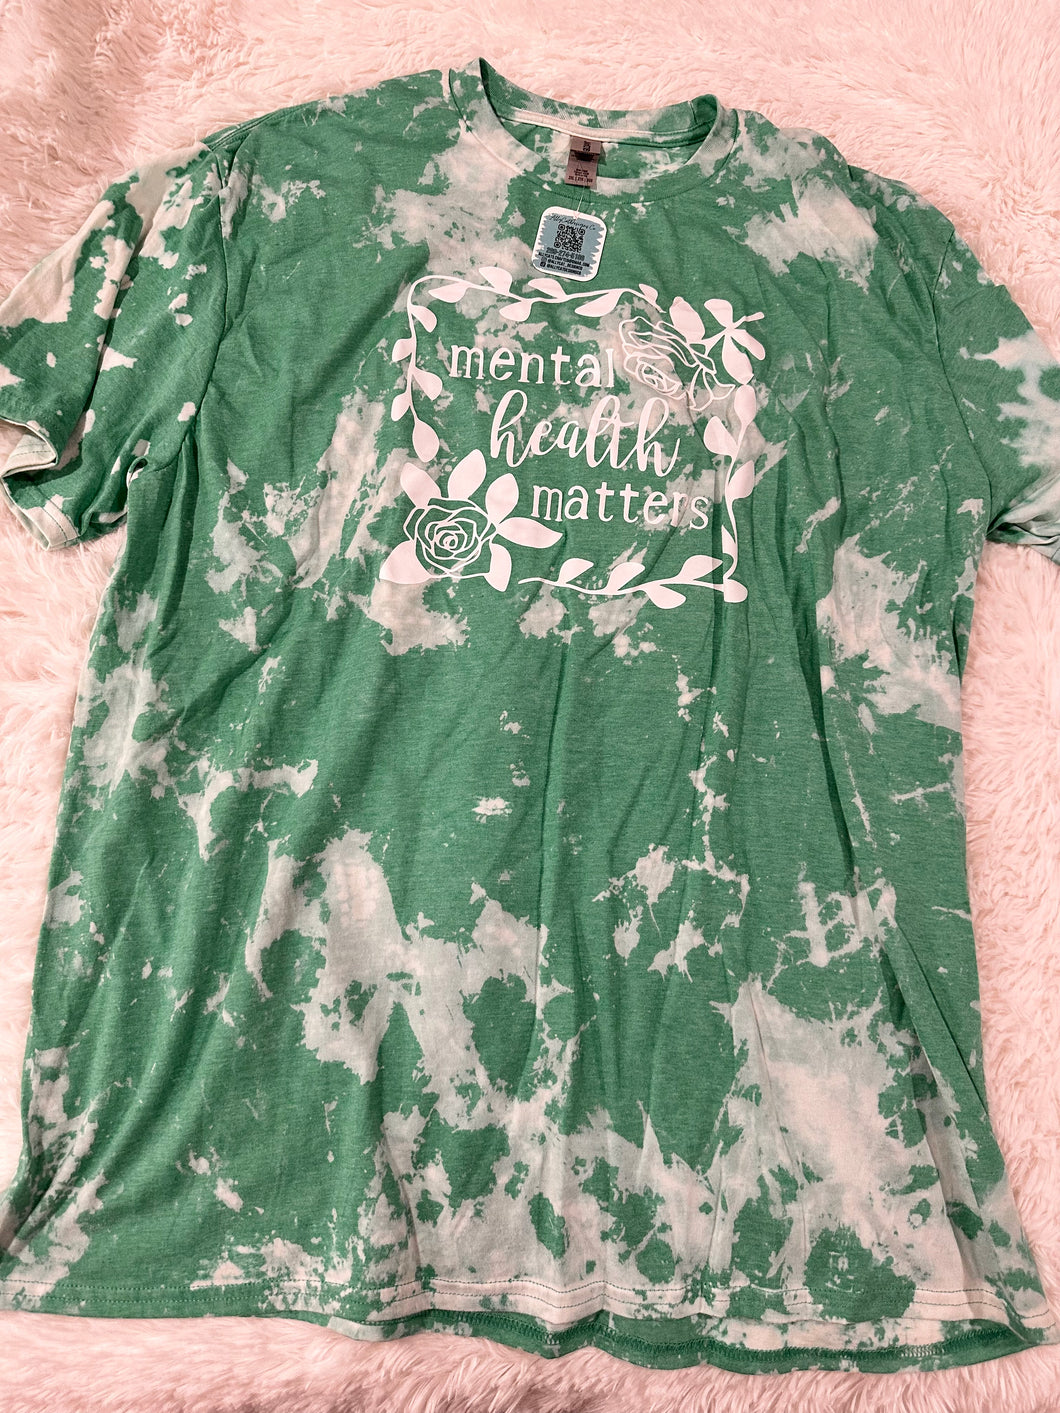 Mental Health Matters Bleached T-Shirt GREEN - 2XL